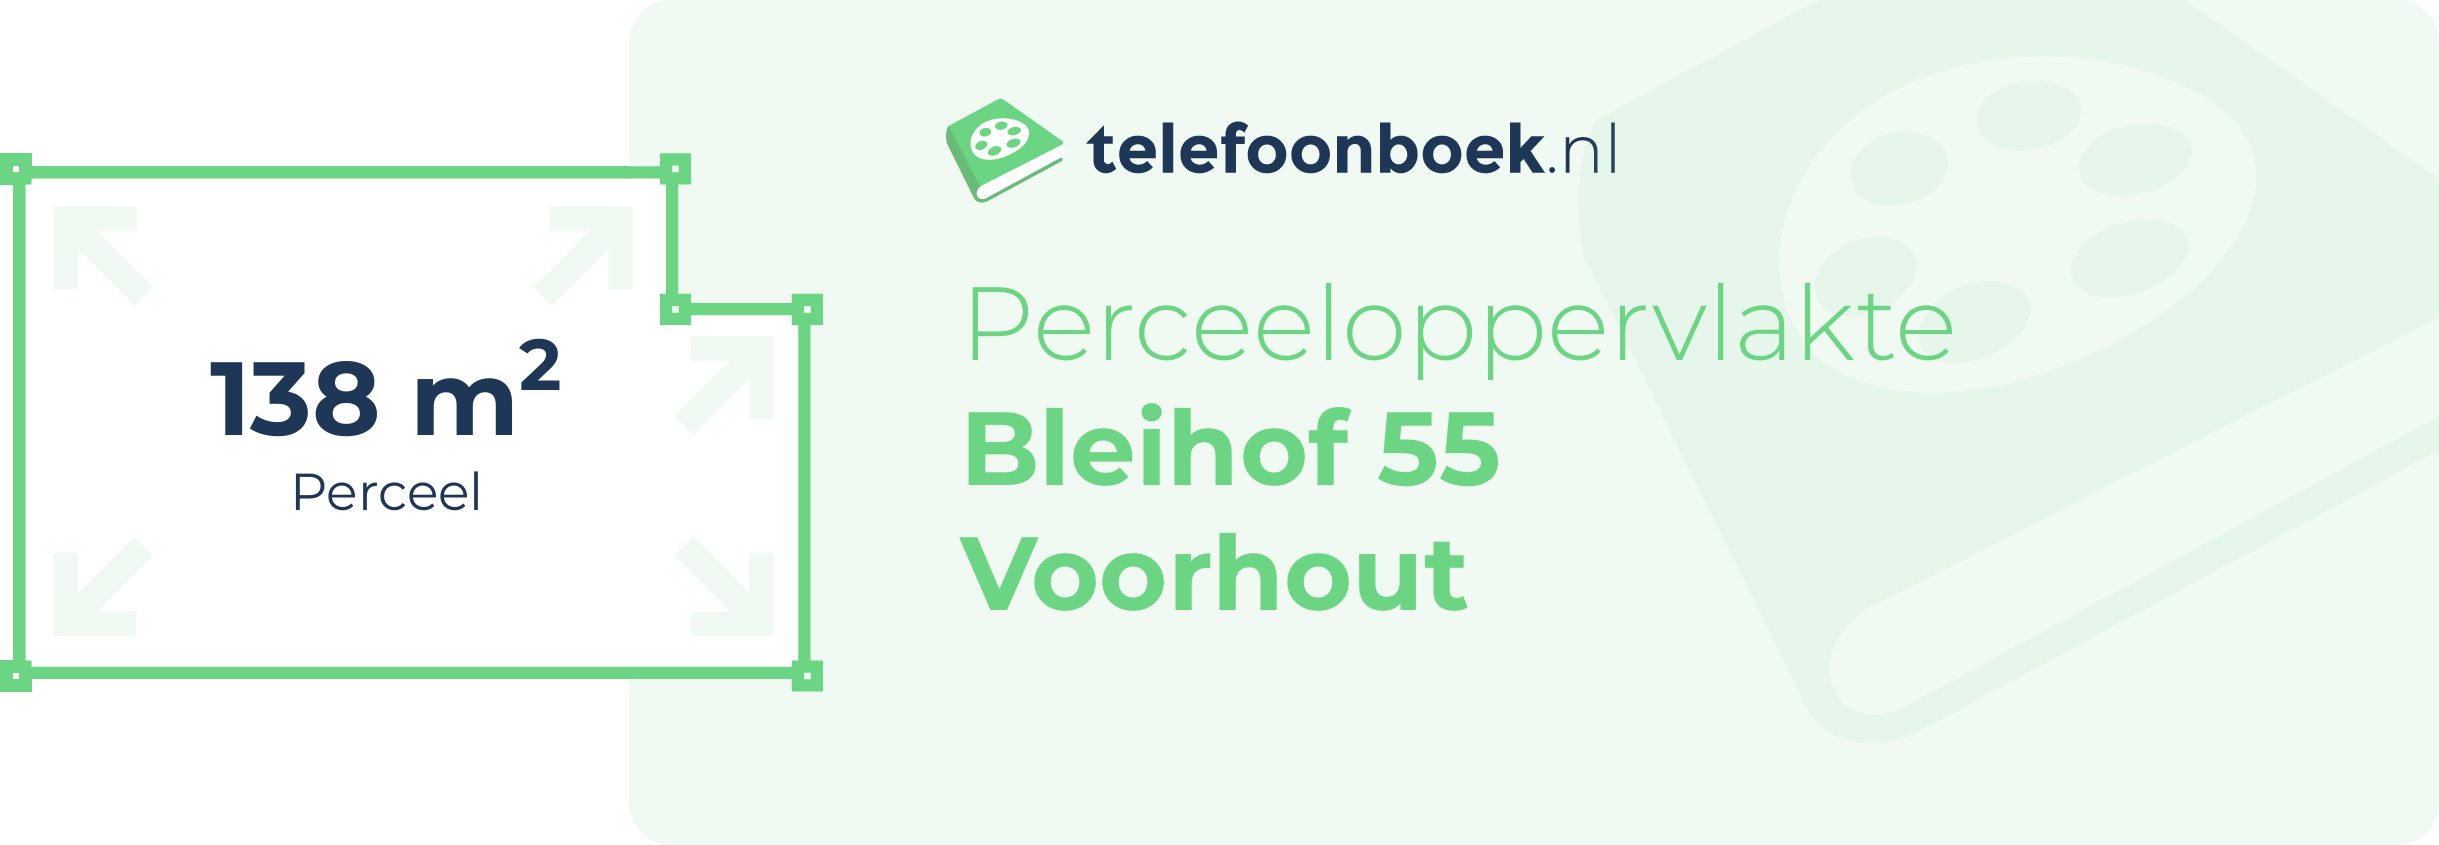 Perceeloppervlakte Bleihof 55 Voorhout